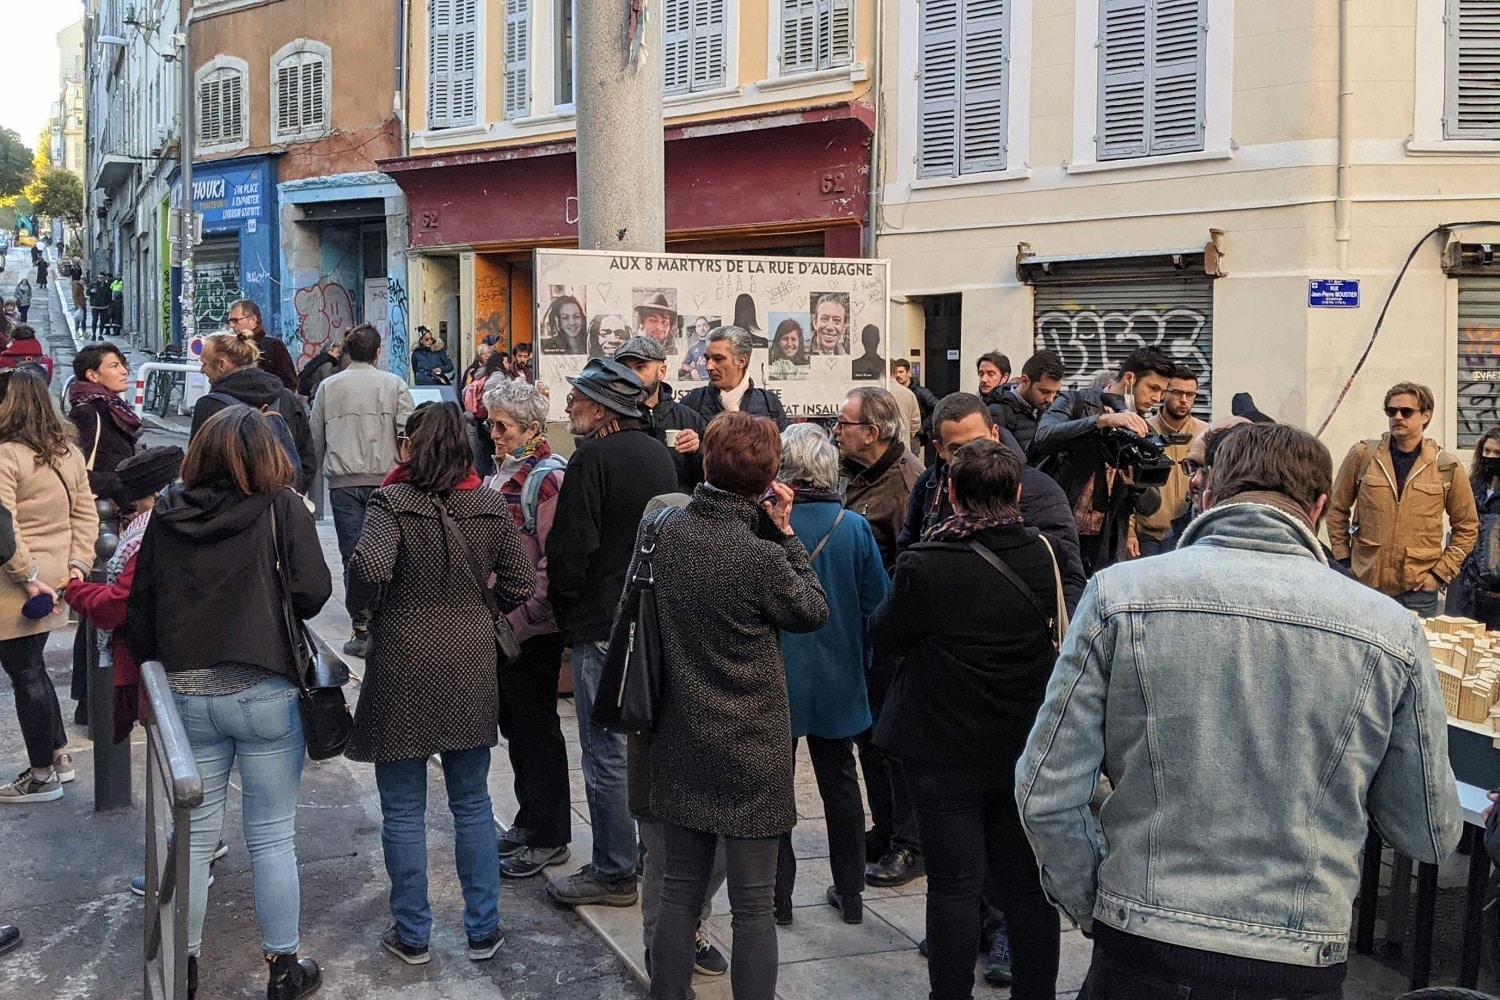 noailles, Rue d&rsquo;Aubagne : une collecte participative pour donner la parole aux habitants de Noailles, Made in Marseille